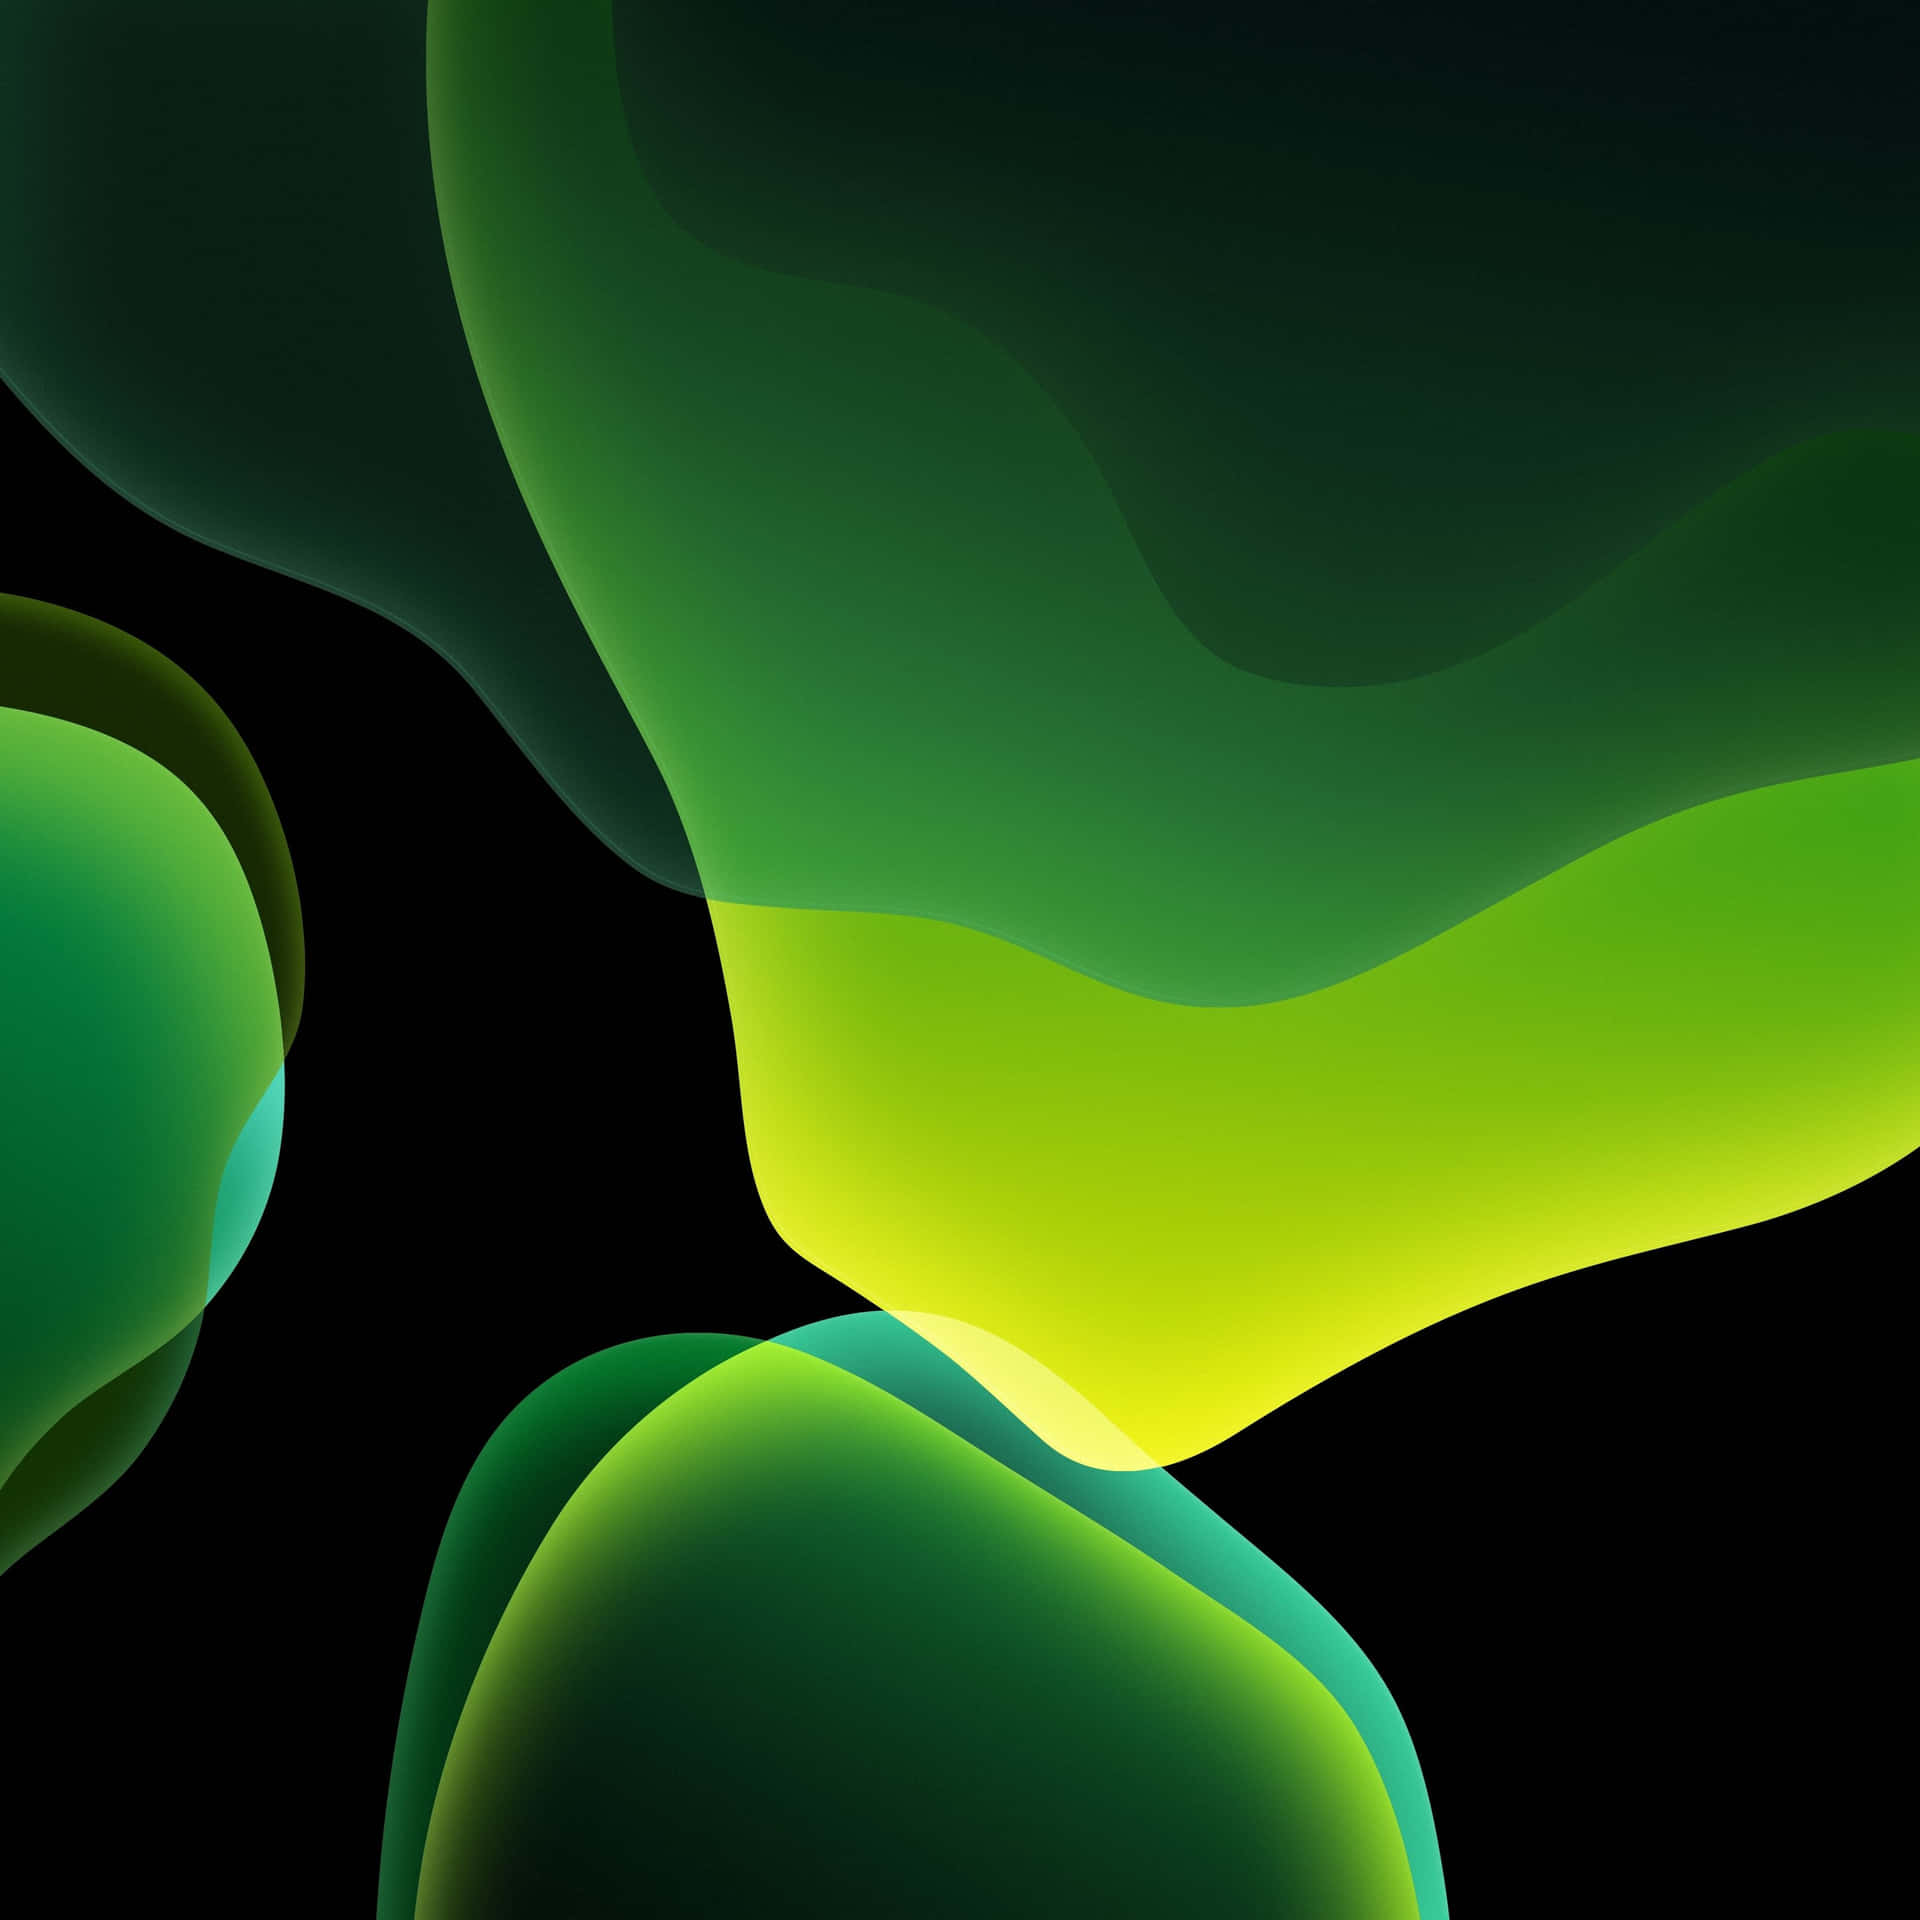 Ios1 Burbujas Verdes Y Verdes Oscuro. Fondo de pantalla